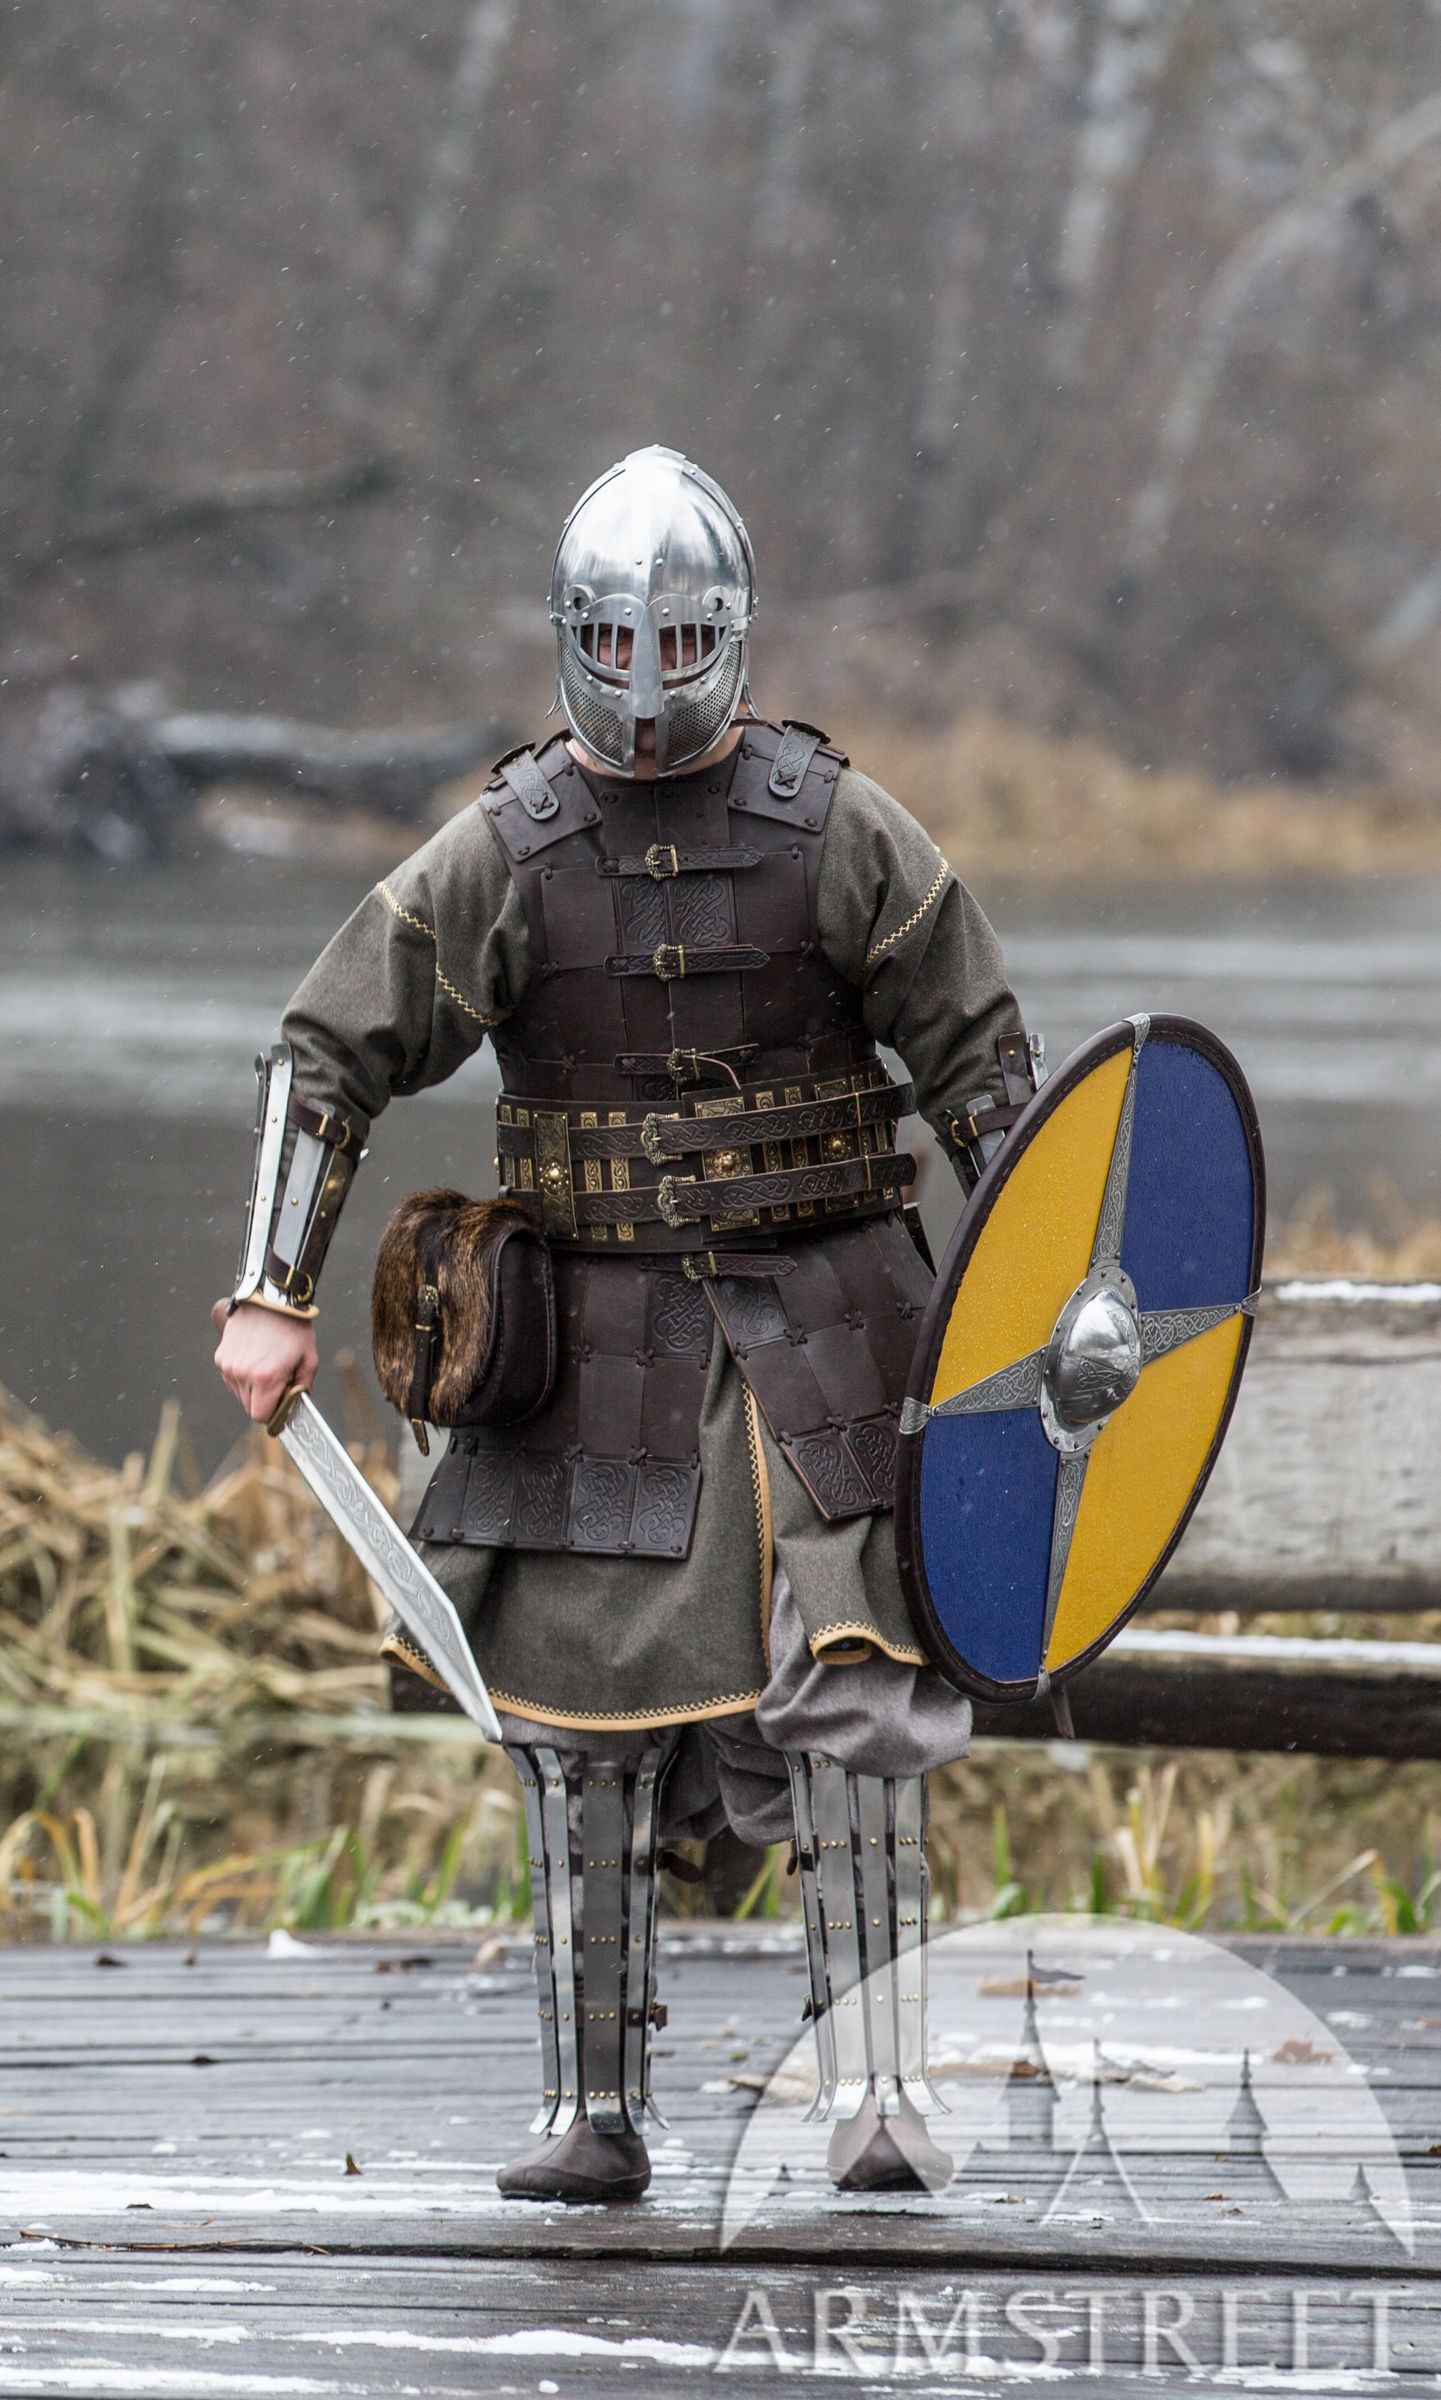 Fantasy Viking Leather Armor “Olegg the Mercenary” for sale. Available